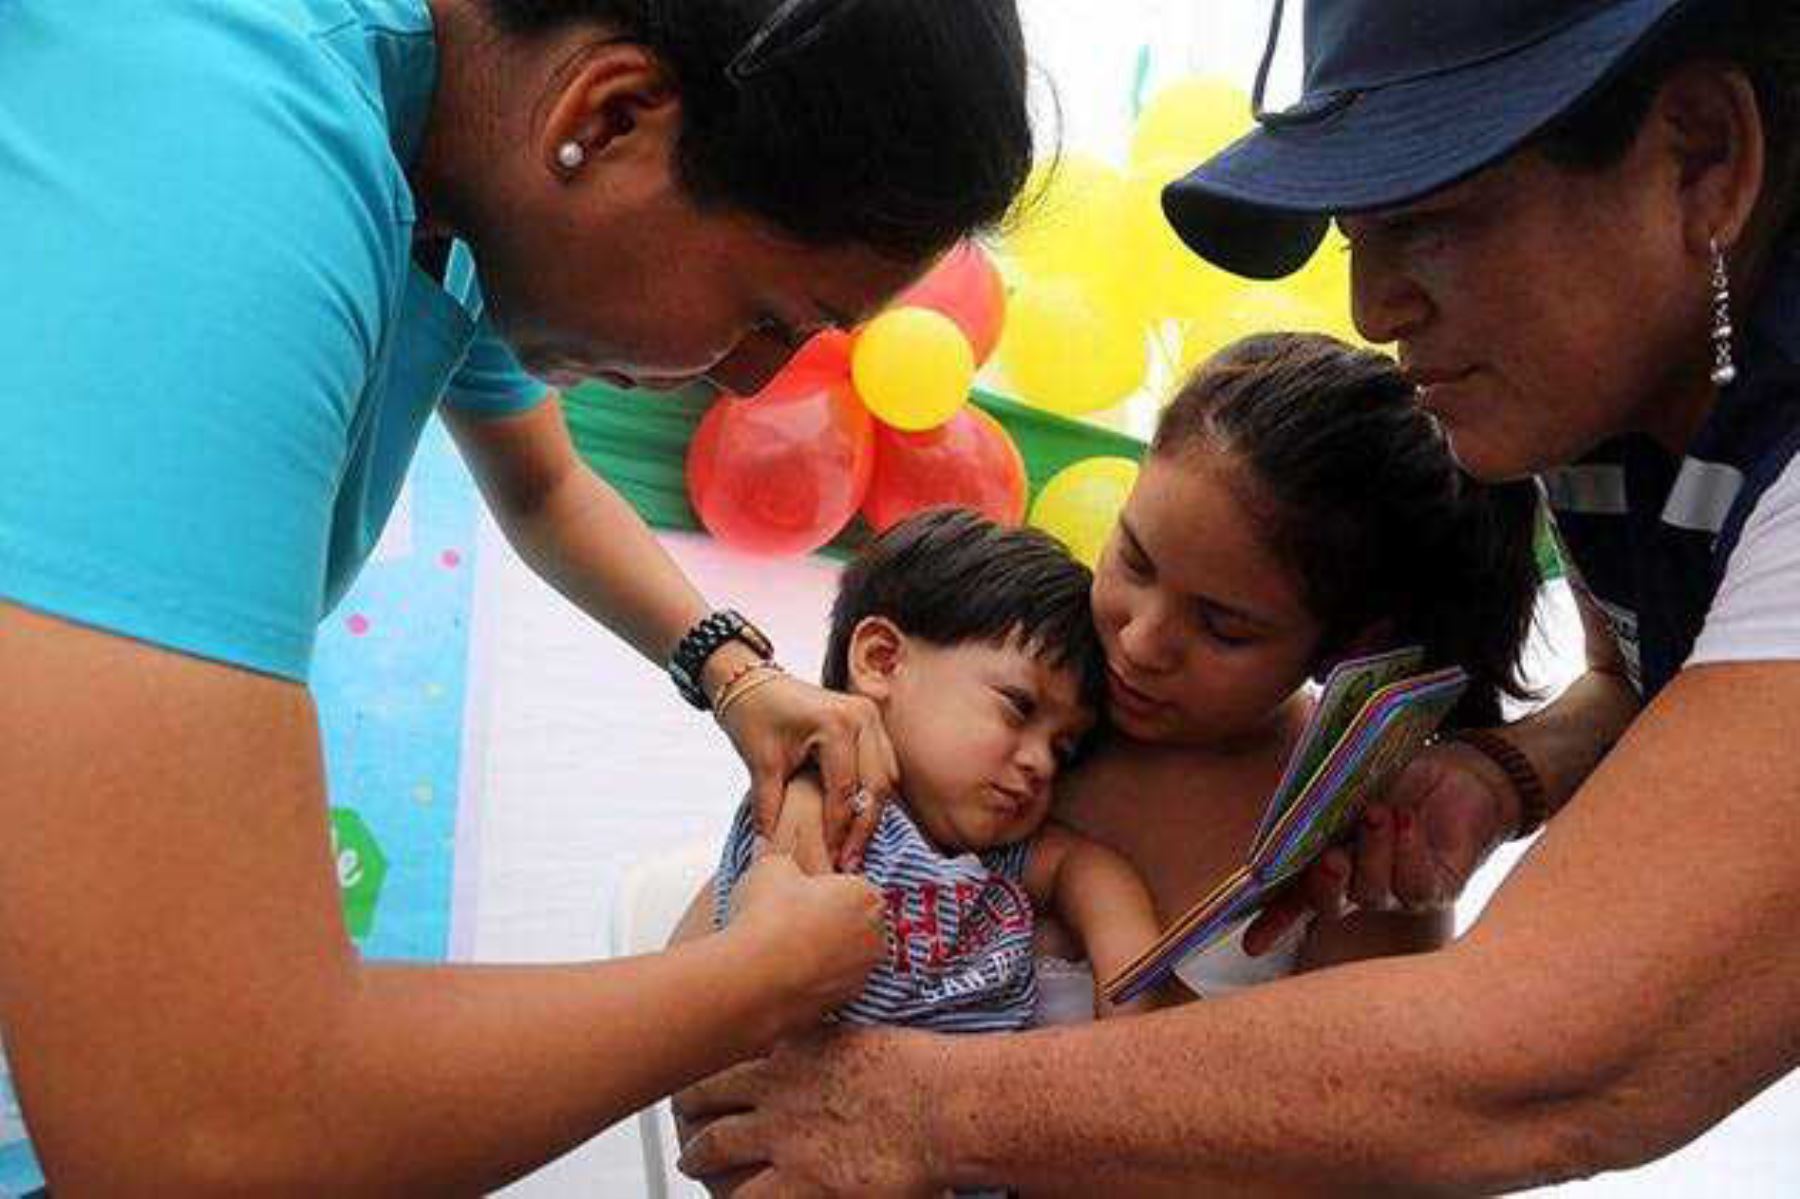 La Gerencia Regional de Salud de Lambayeque intensificó la vacunación para prevenir la neumonía en la población infantil, en vista que a la fecha se ha reportado 81 casos en niños menores de cinco años en toda la región, debido a las bajas temperaturas.